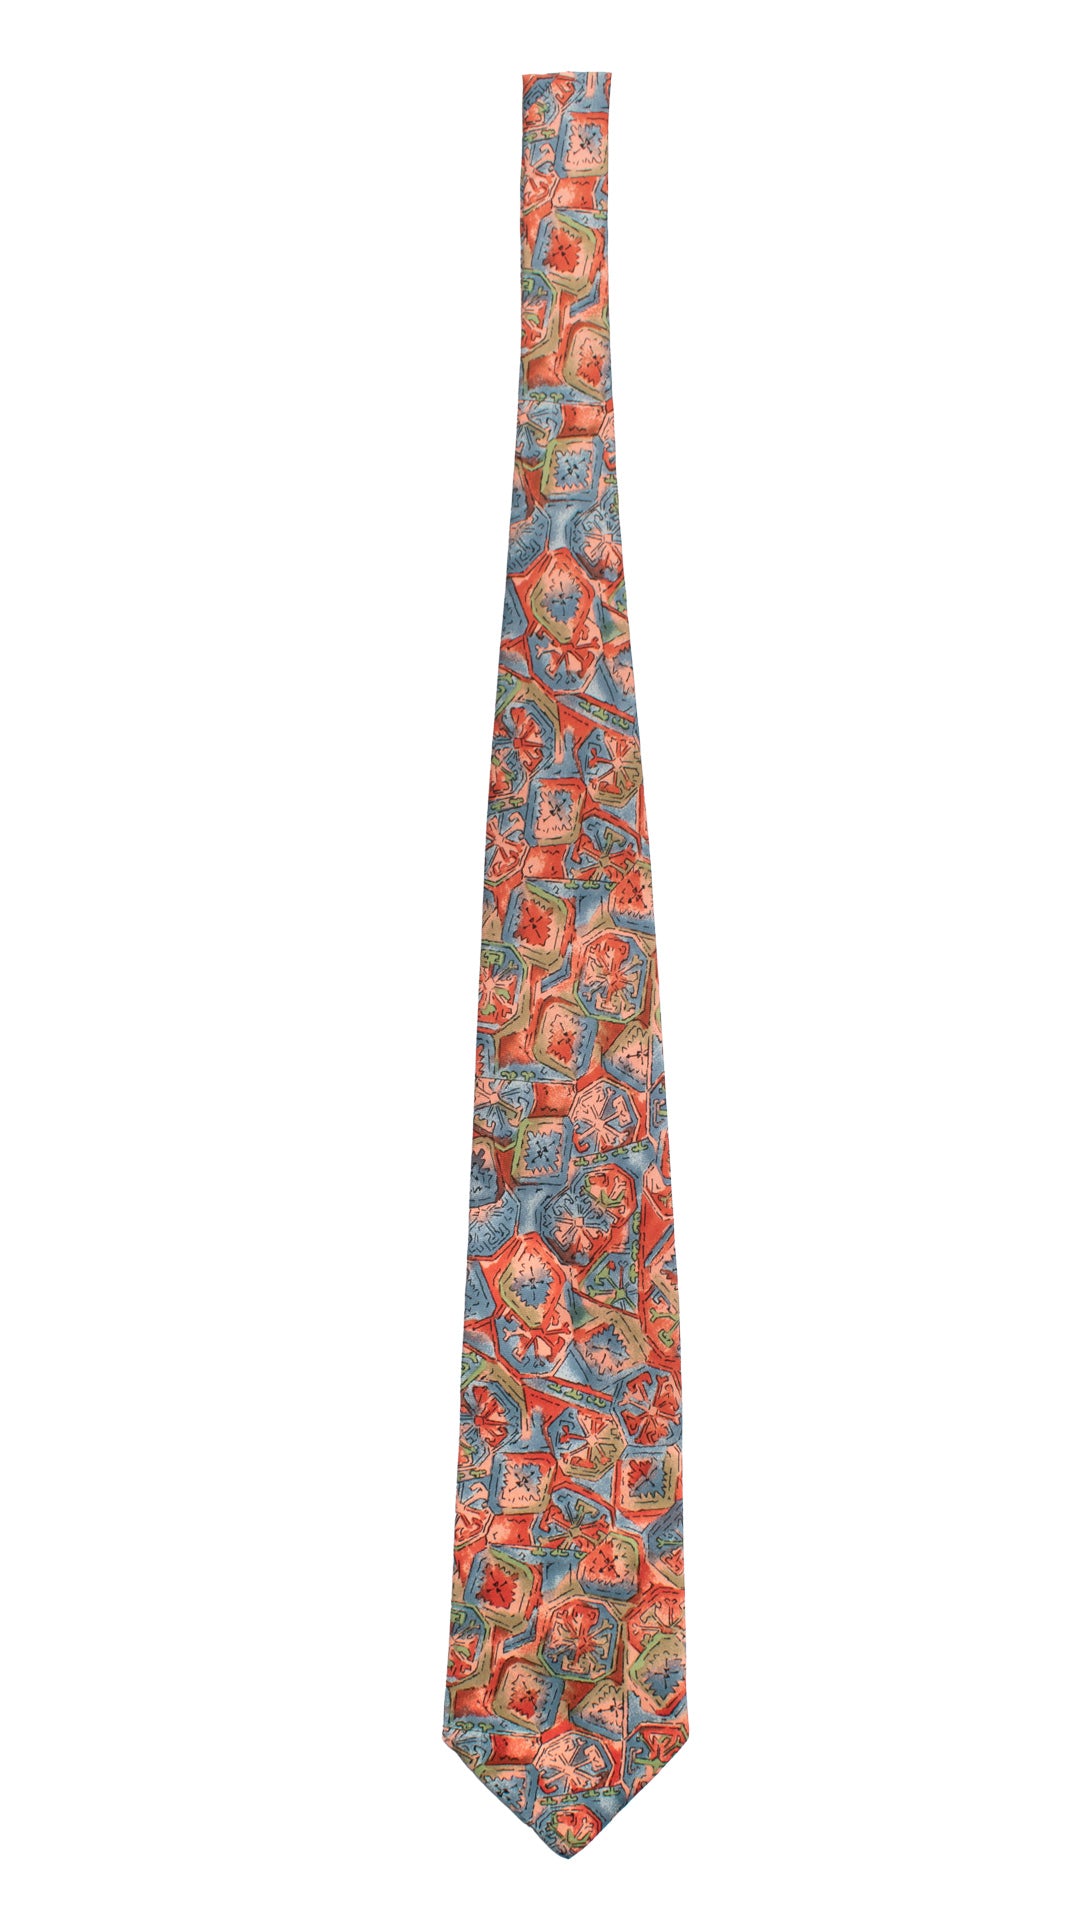 Cravatta Vintage in Twill di Seta Fantasia Rosa Arancione Ceruleo CV810 Intera